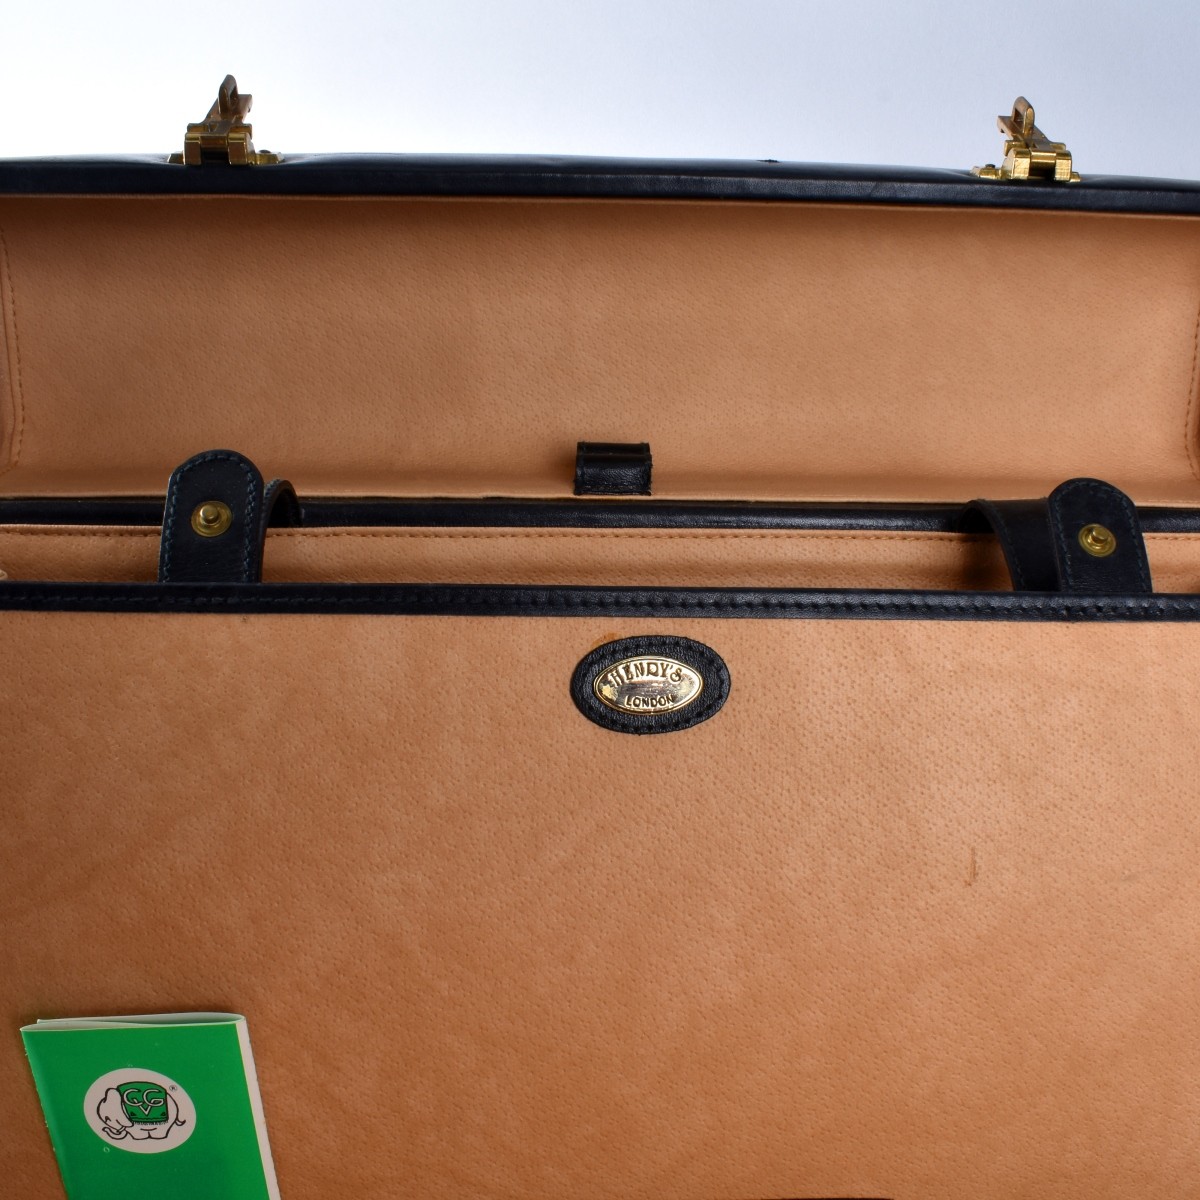 Three Vintage Briefcases